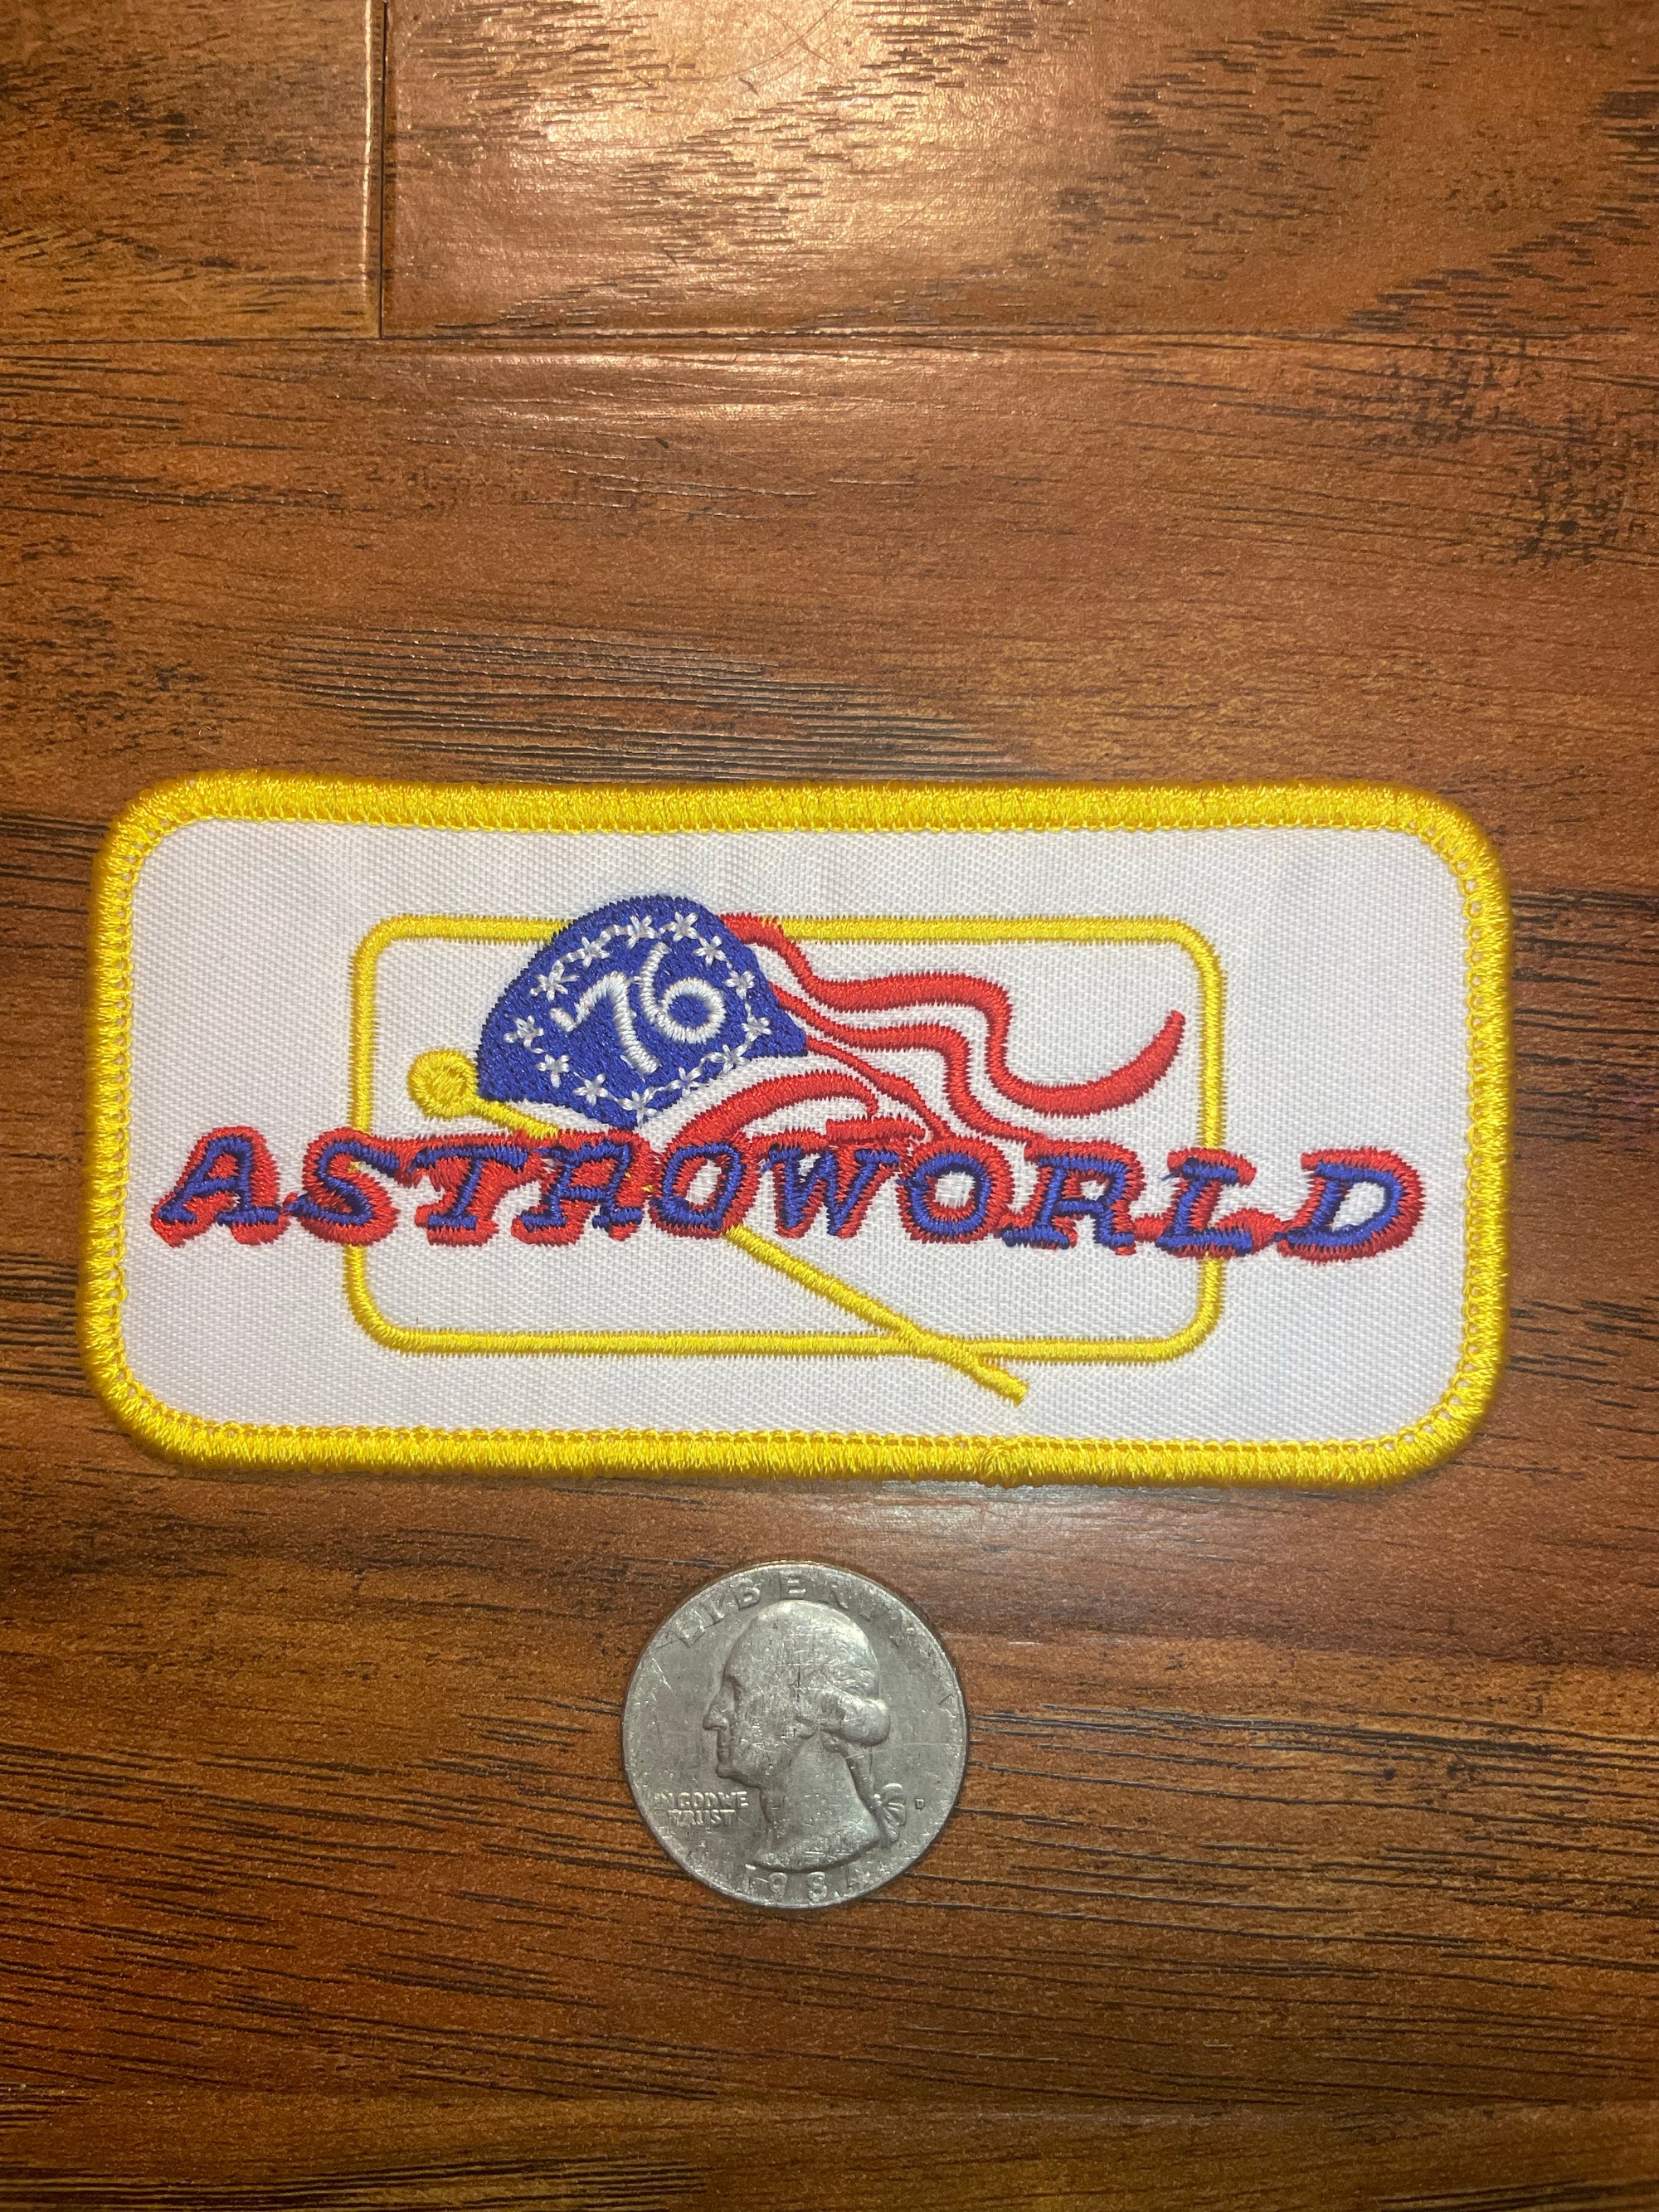 Astro world